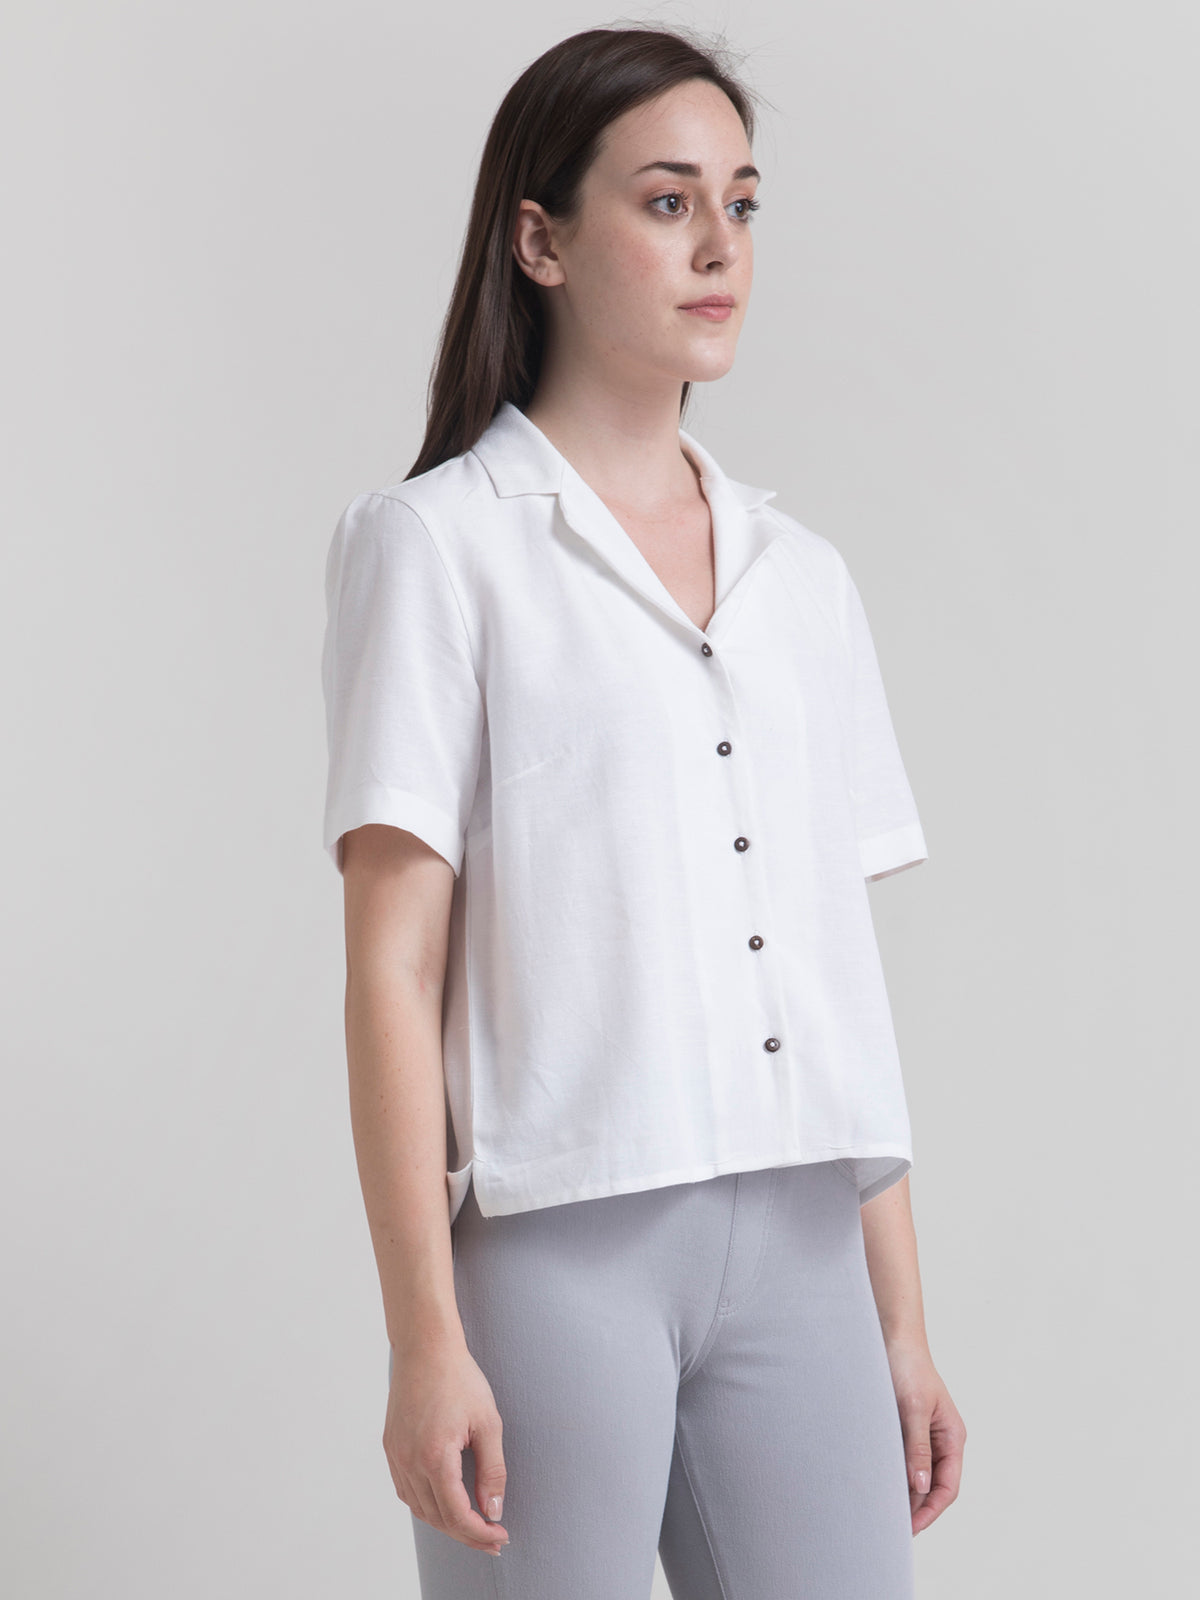 Cotton Notch Lapel Shirt - White